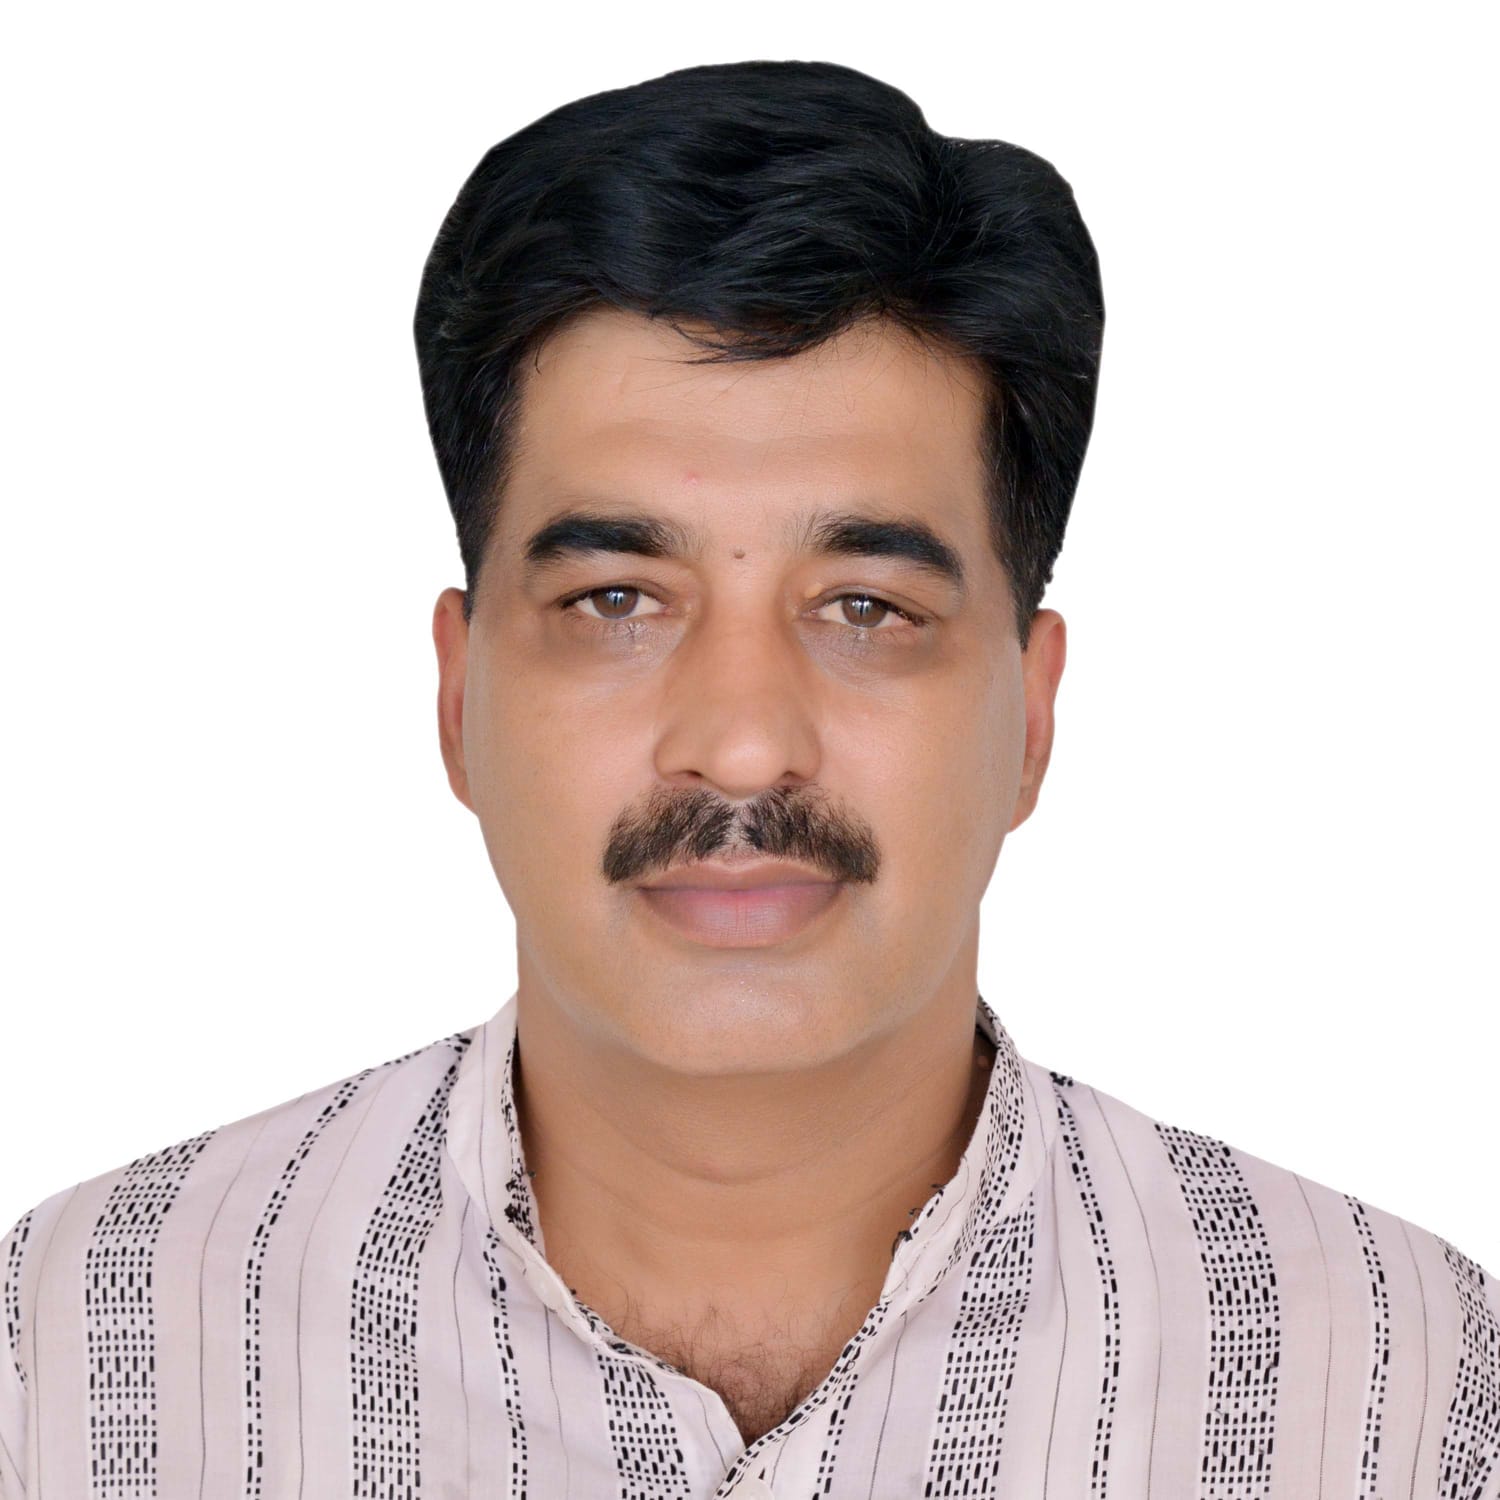  ڈاکٹر راجہ محمد سجاد خان 